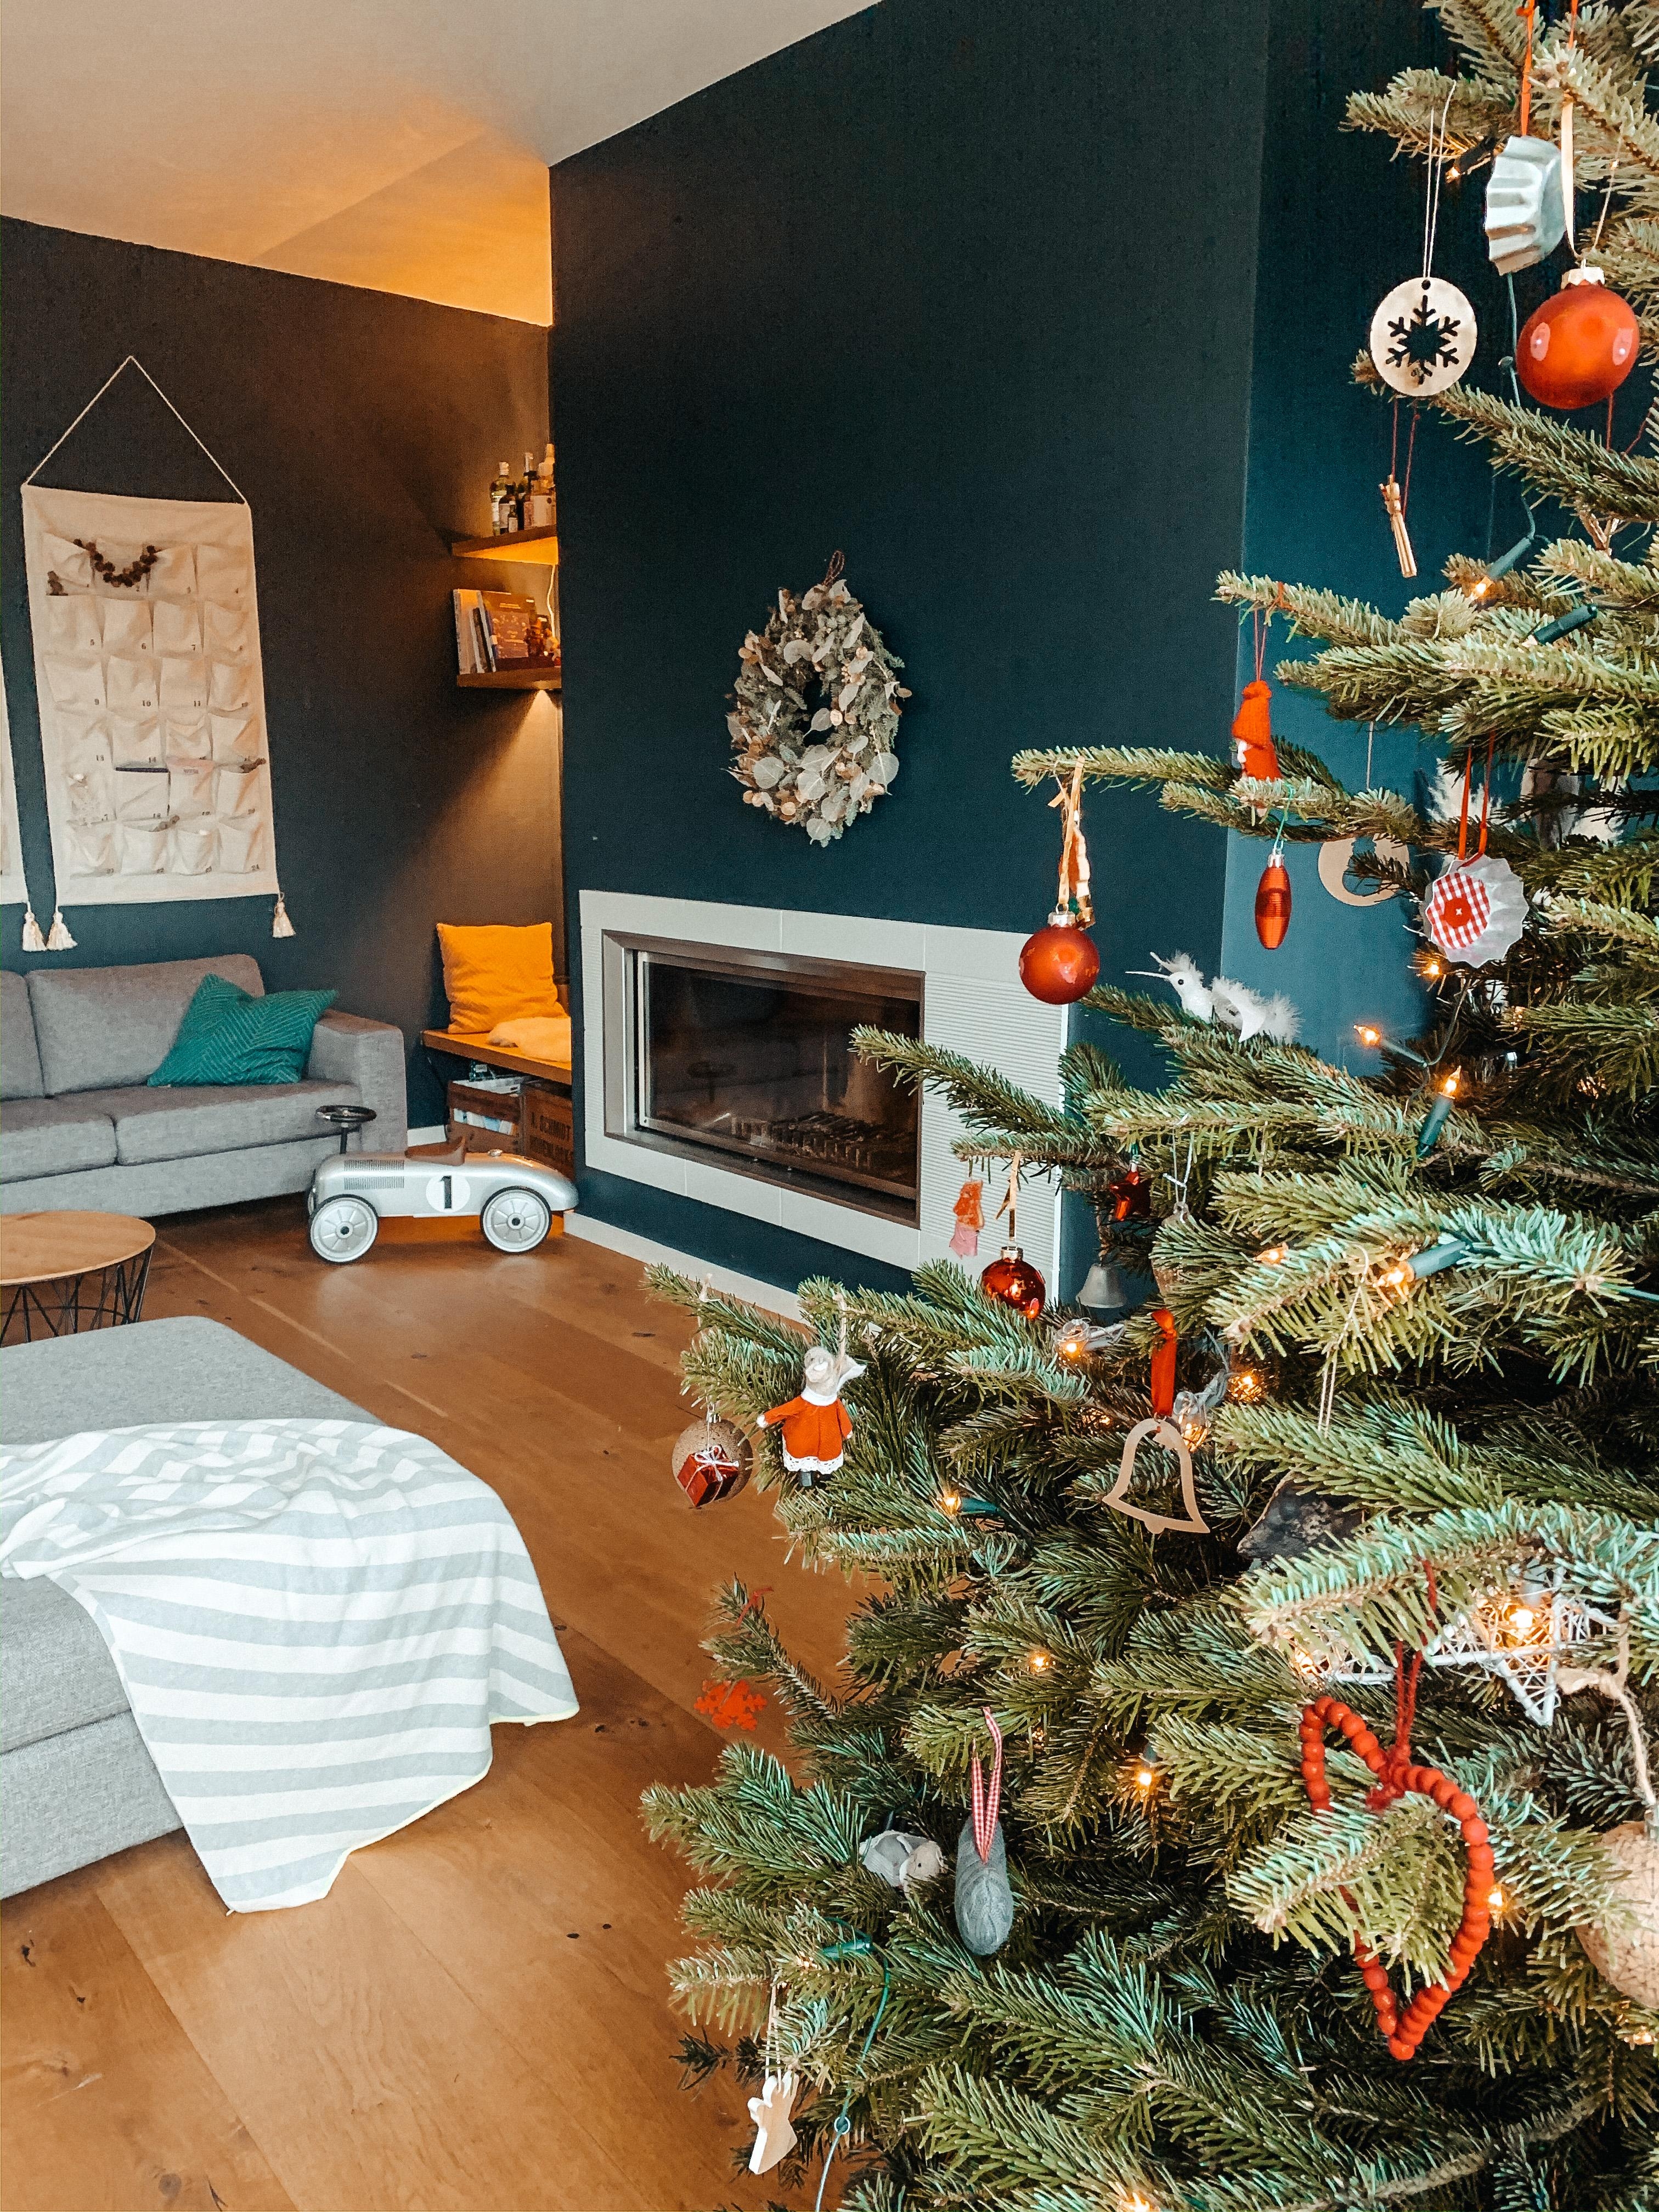 Weihnachtszauber im Wohnzimmer #christmas #weihnachtsbaum #livingroom